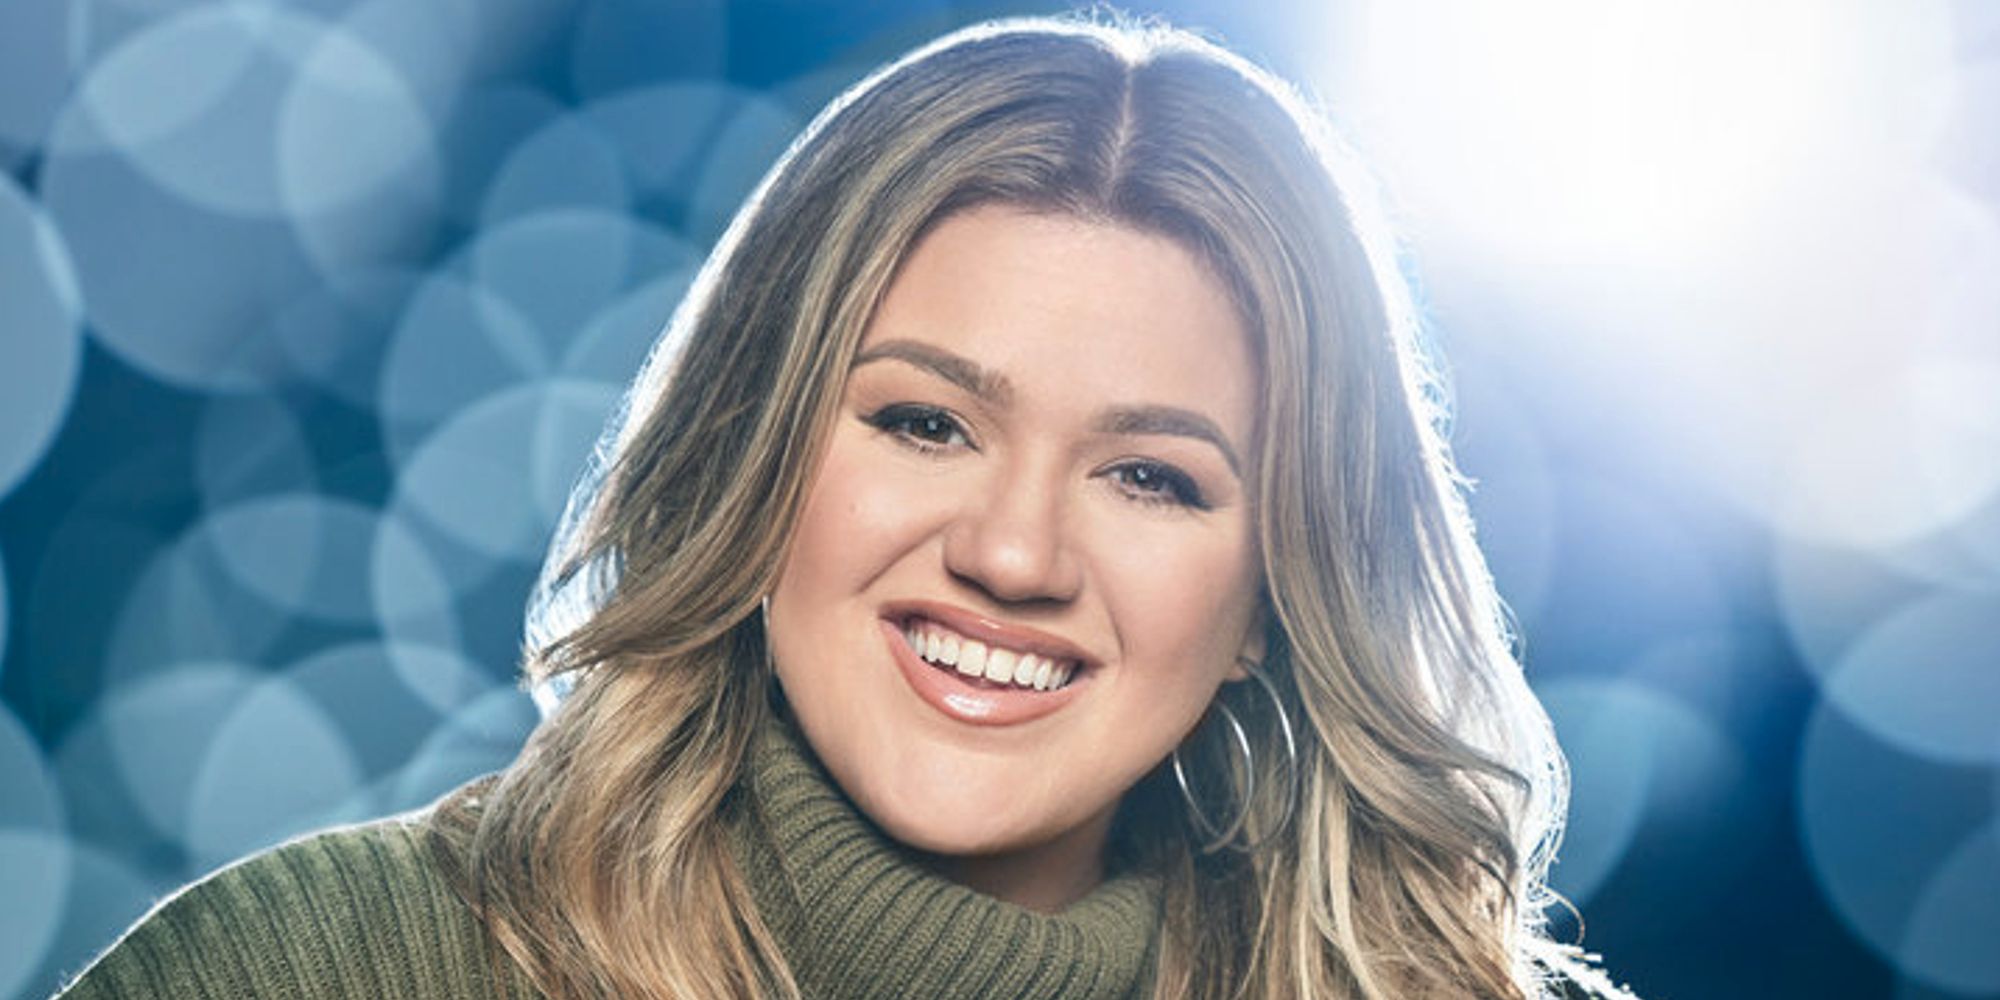 La voz: Kelly Clarkson afirma sorprendentemente que 'no se volverá a casar'